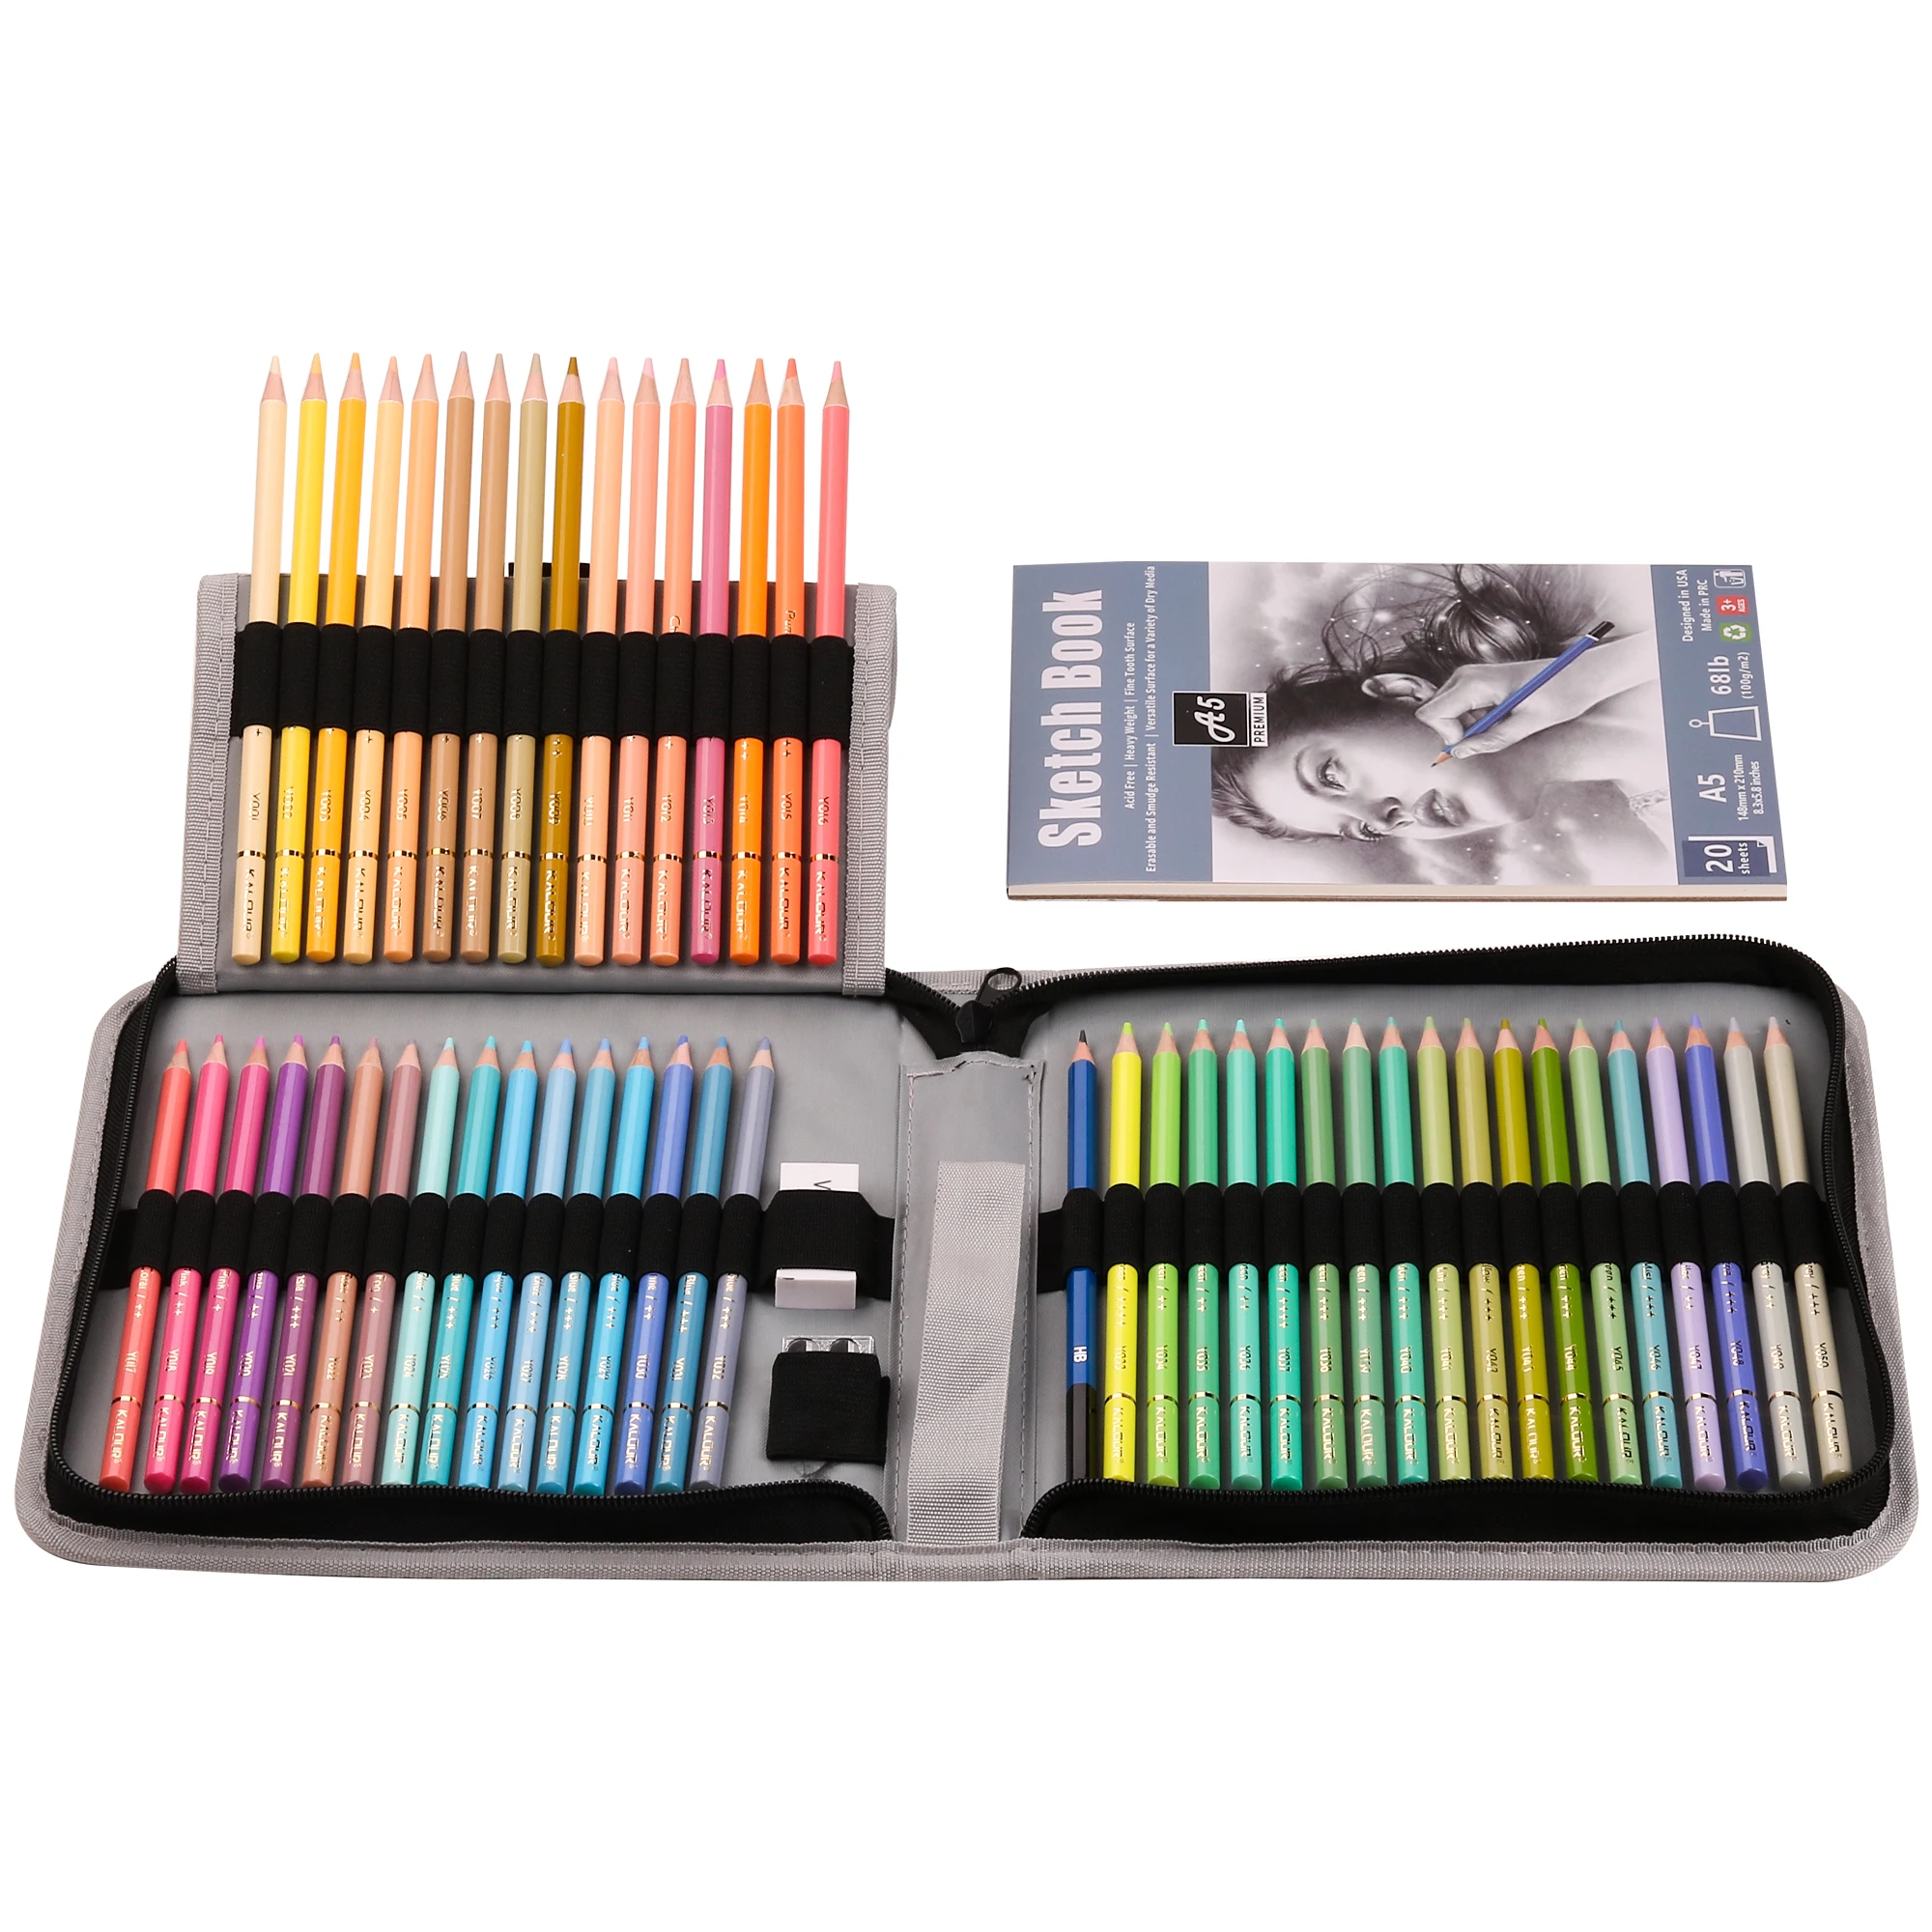 KALOUR Macaron Pastel Colored Pencils,Set of 50 Colors,Artists